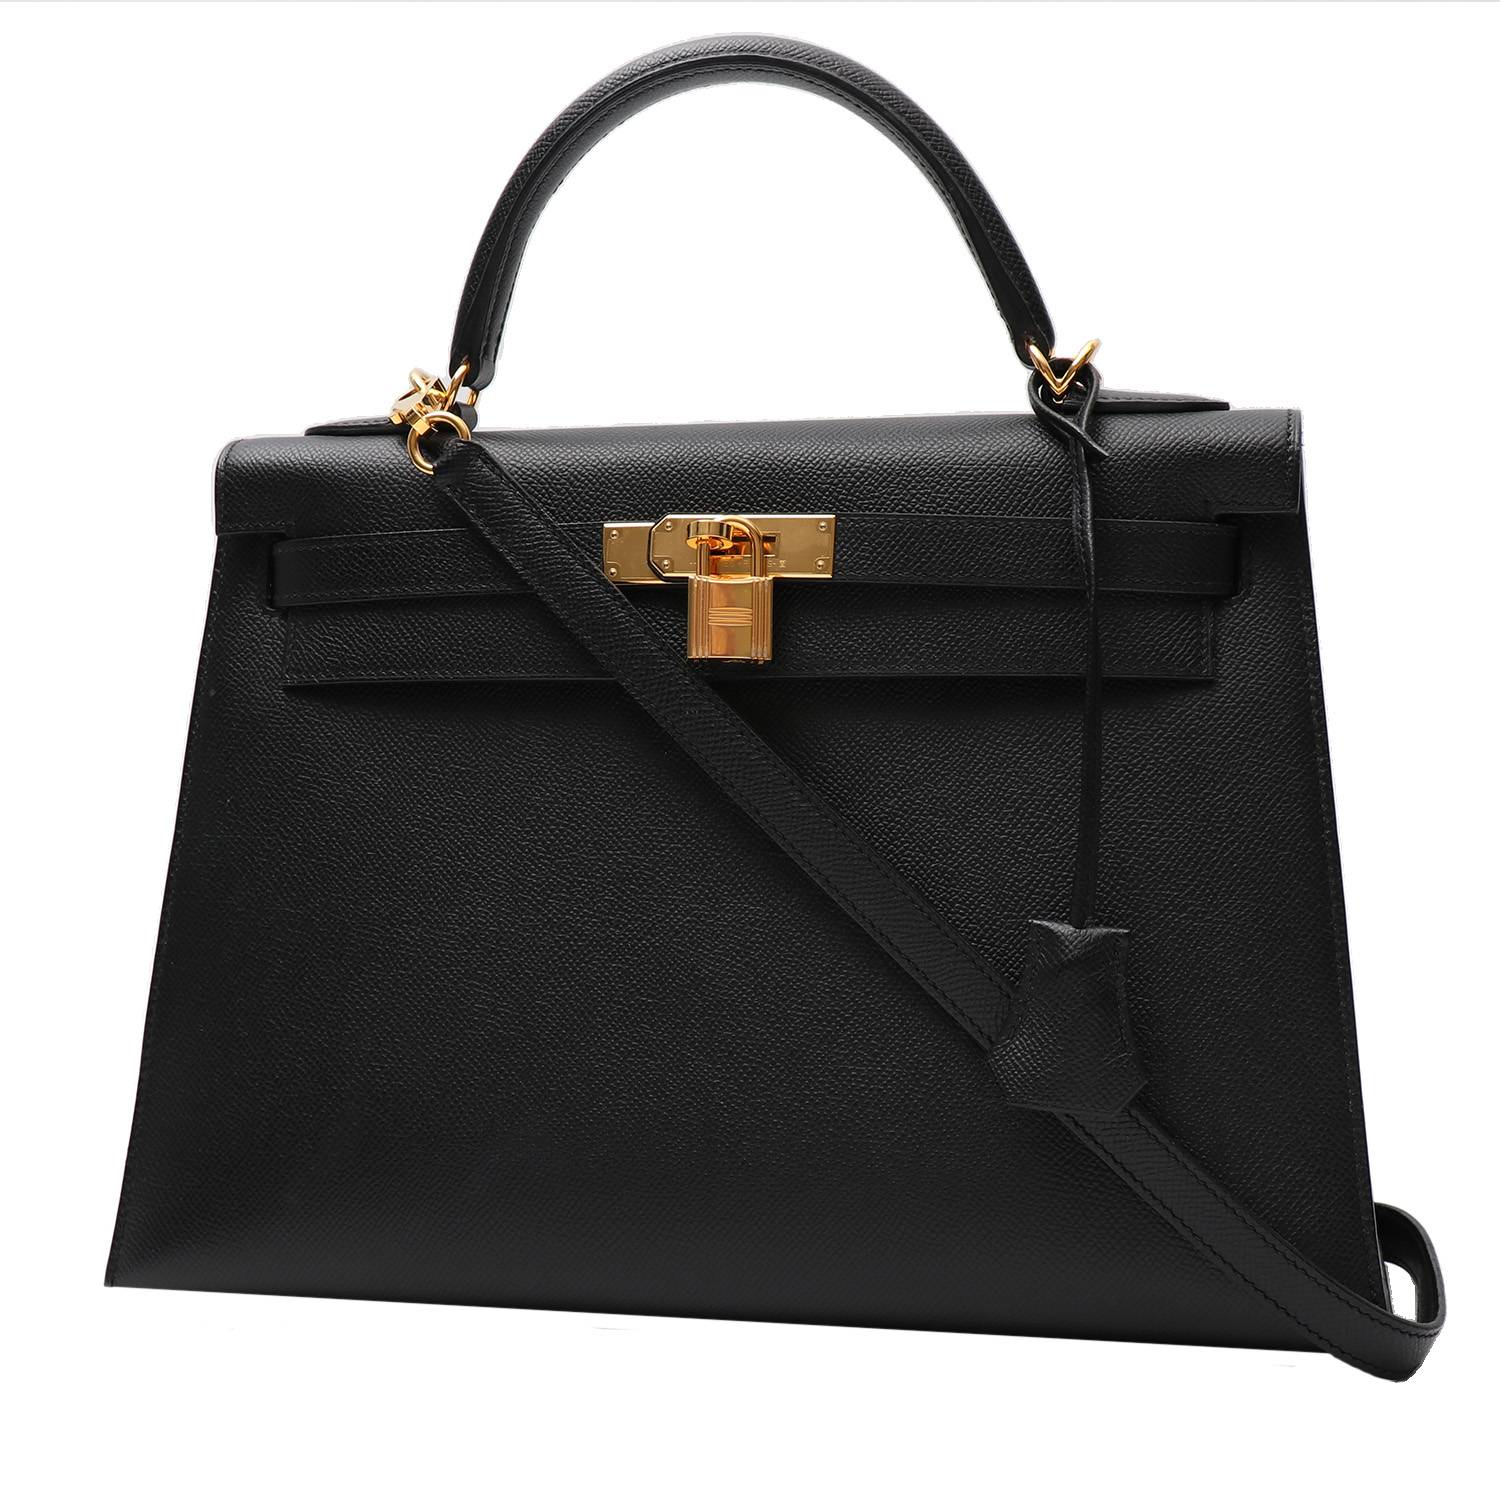 Hermes 42cm Black Togo Leather Jpg Shoulder Kelly Bag